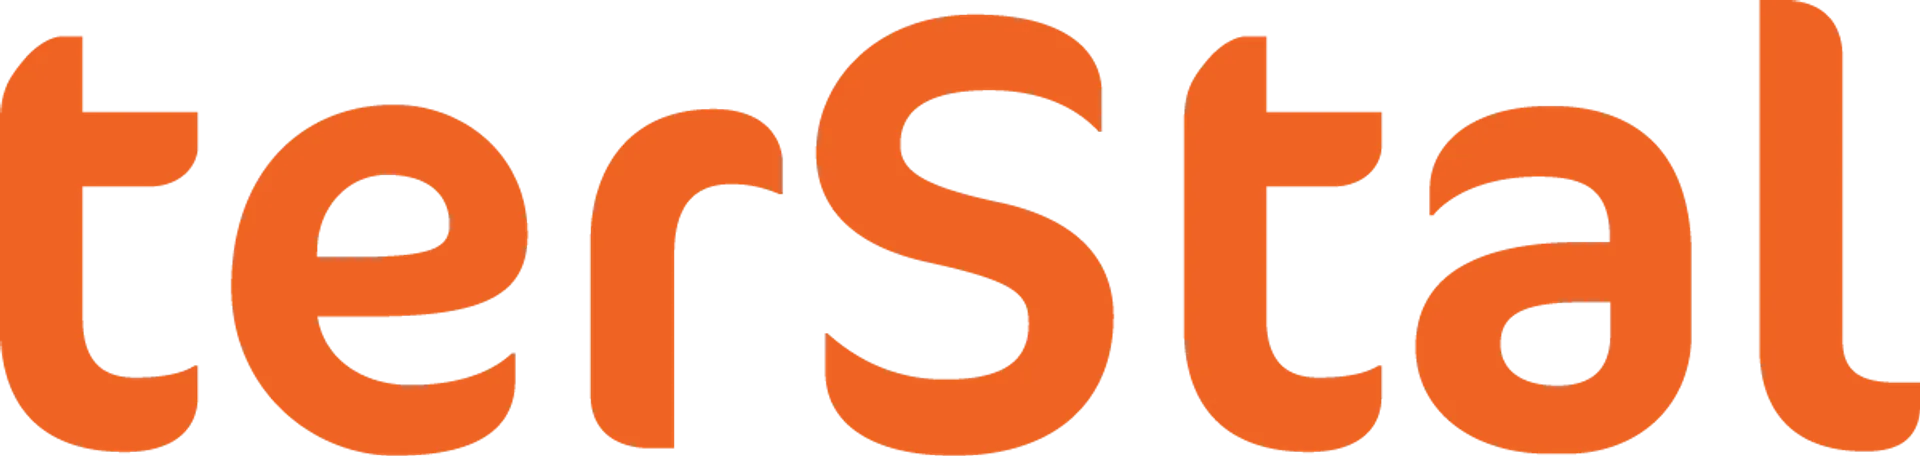 TERSTAL logo